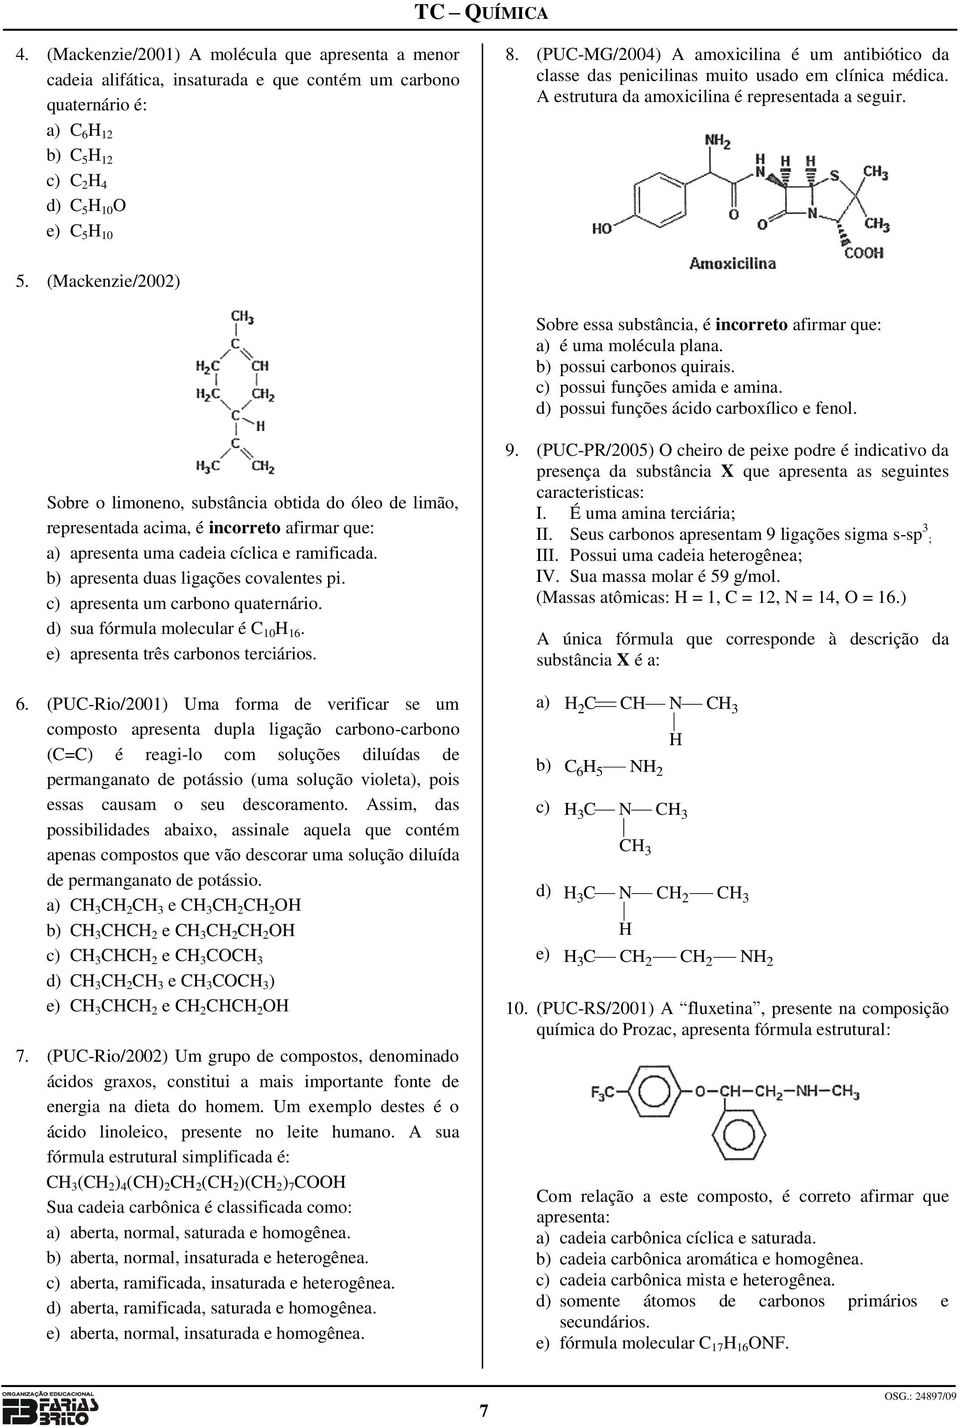 (Mackenzie/2002) Sobre essa substância, é incorreto afirmar que: a) é uma molécula plana. b) possui carbonos quirais. c) possui funções amida e amina. d) possui funções ácido carboxílico e fenol.